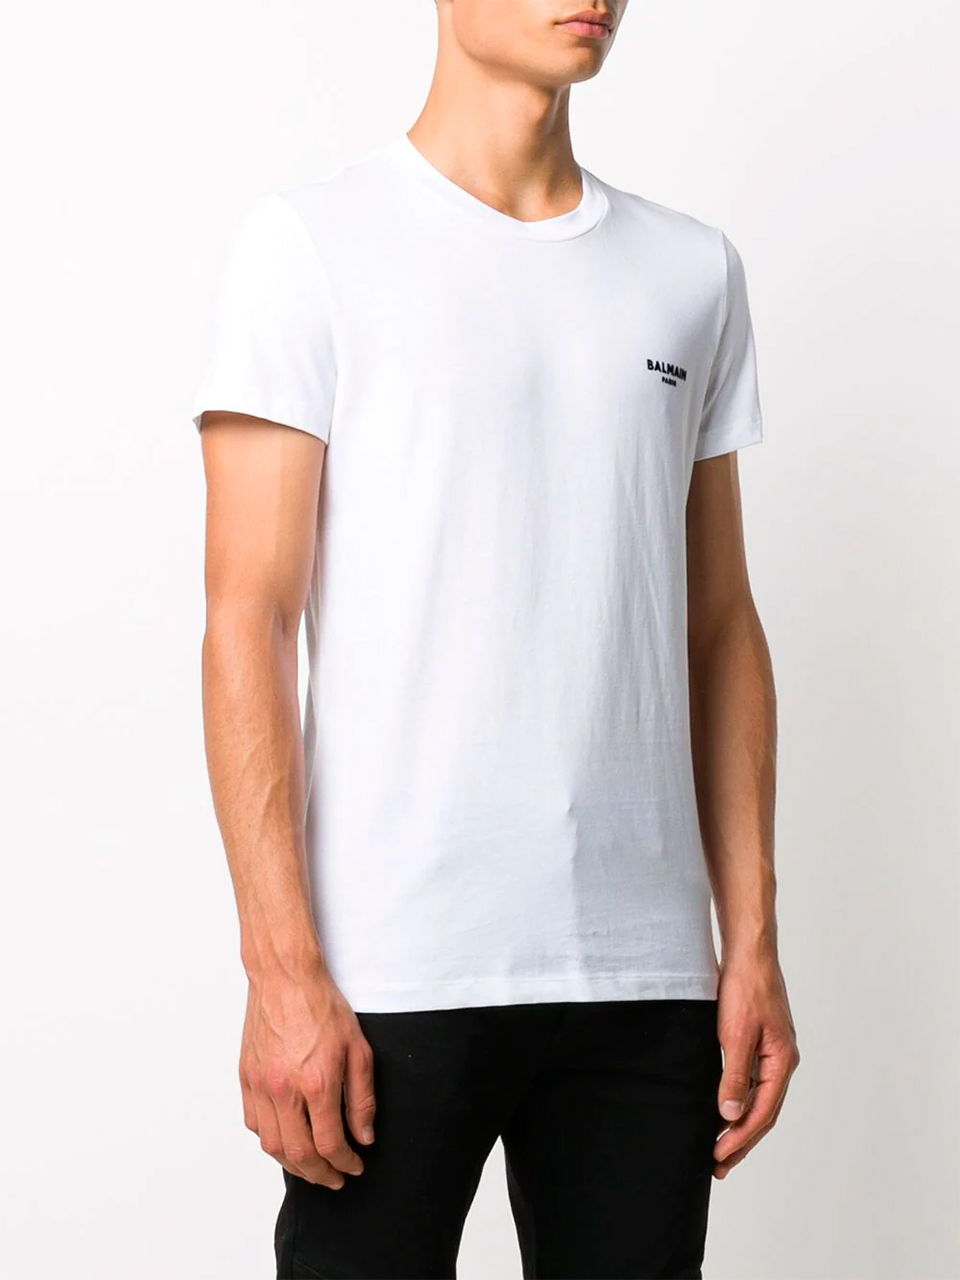 Imagem de: Camiseta Balmain Paris Branca com Logo